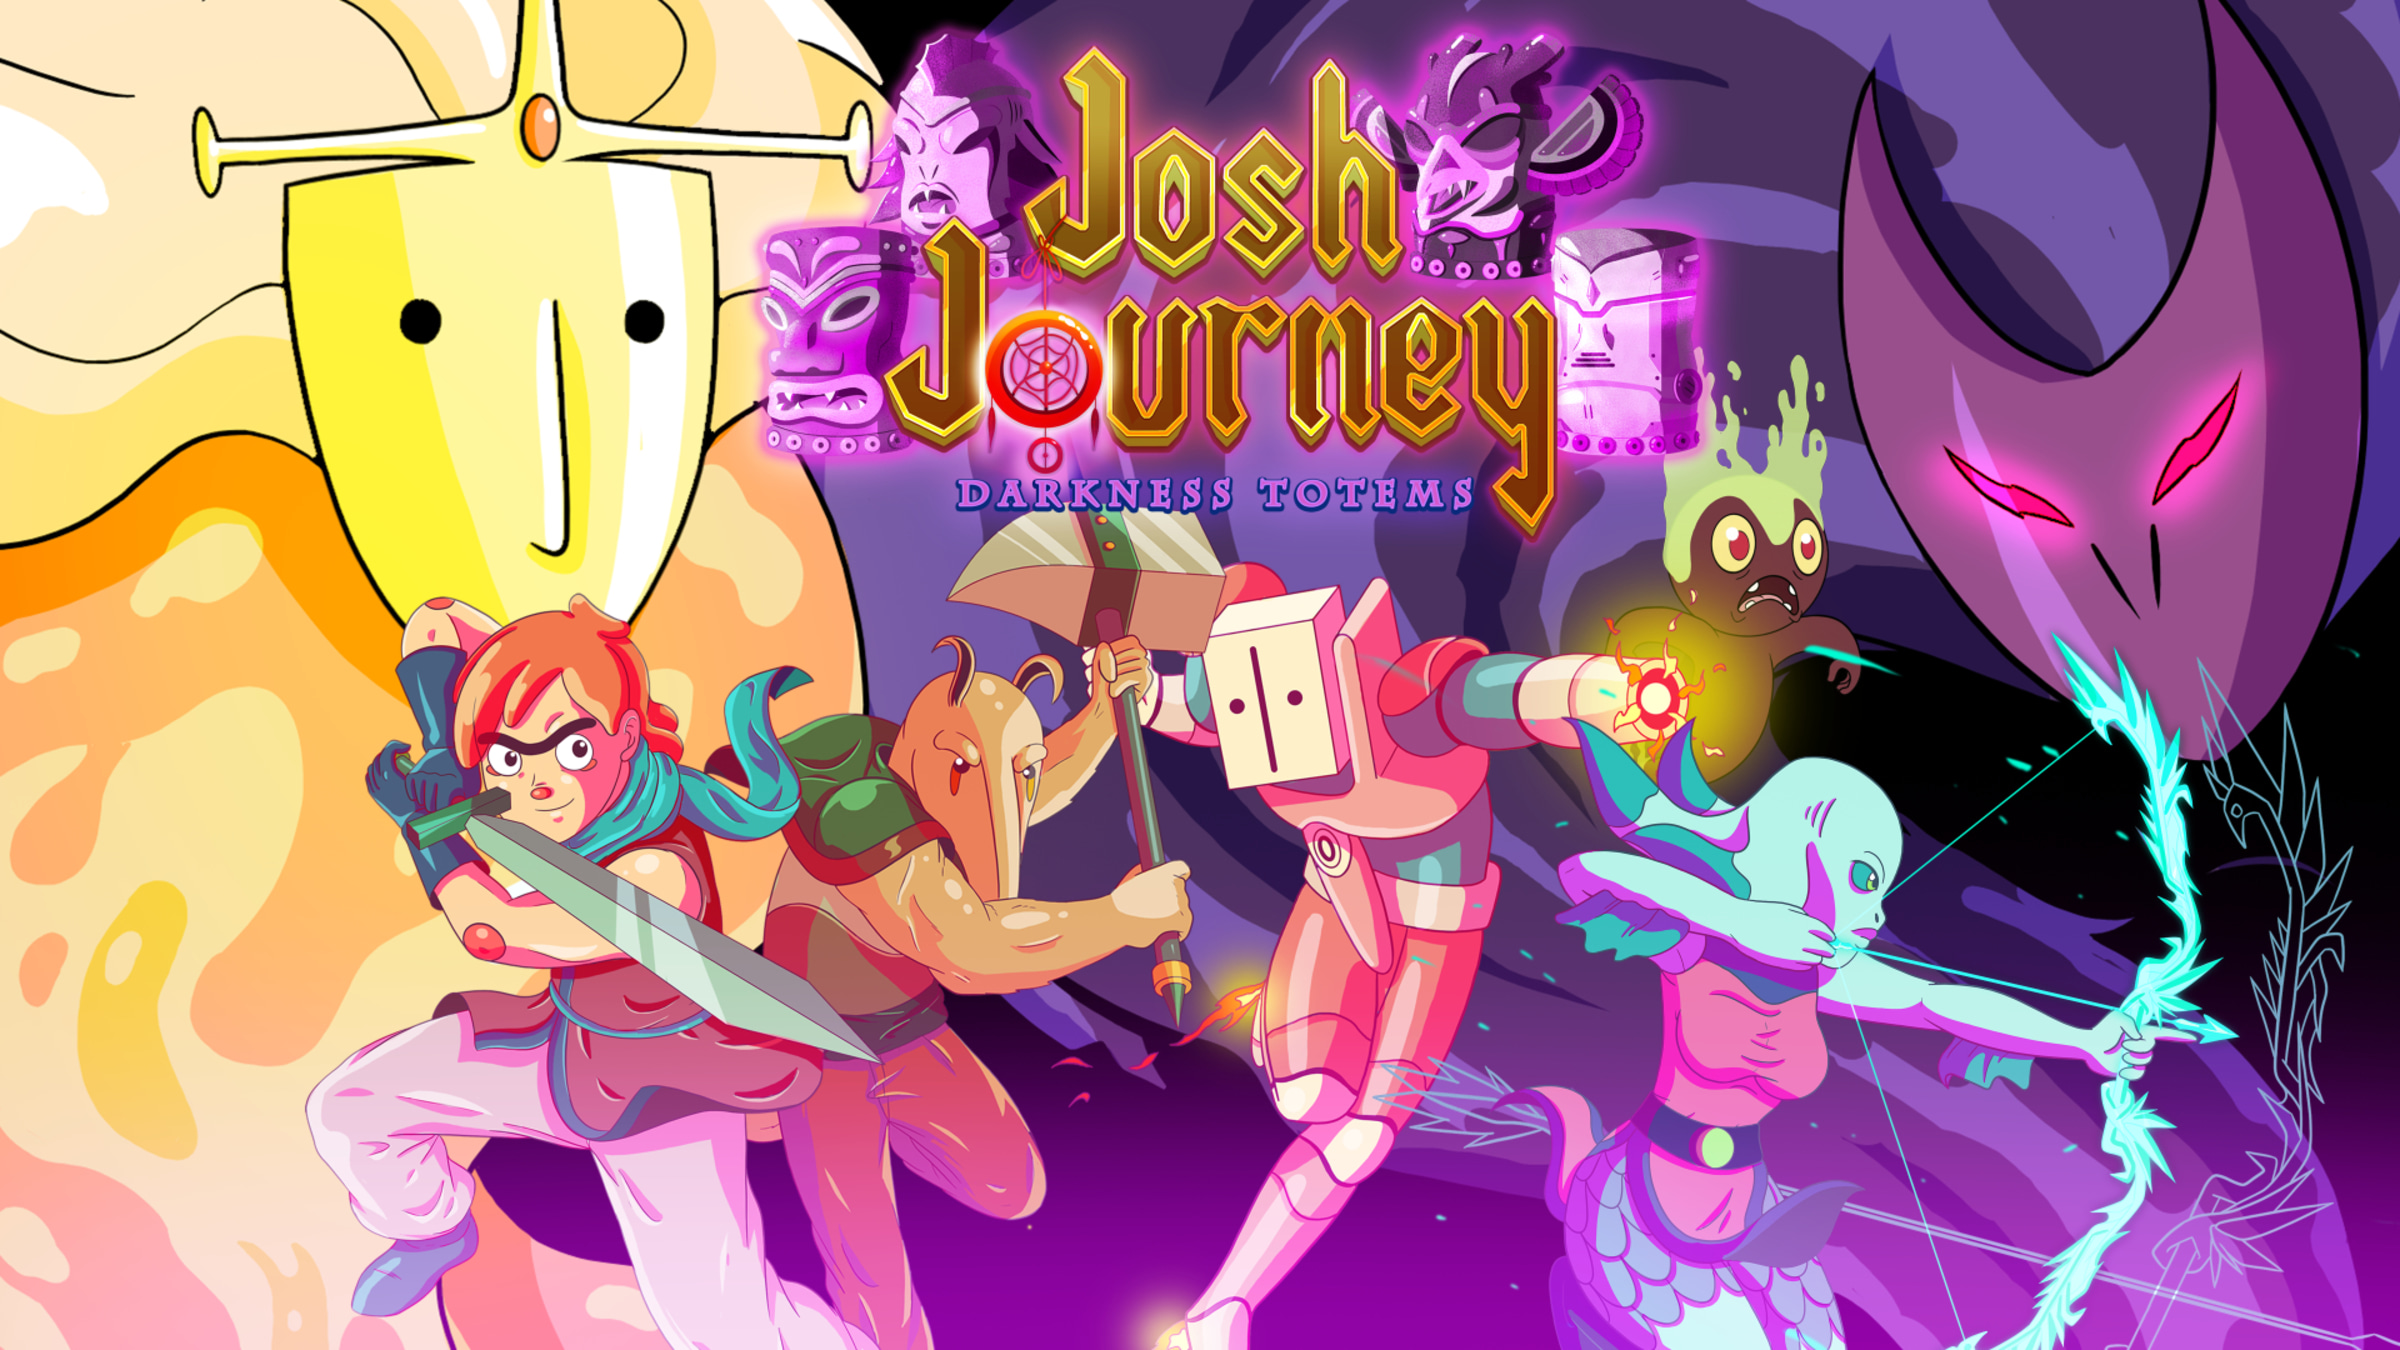 Josh Journey: Darkness Totems. Switch Totems. Платформер чашки игра ps5. The Kryptik a Journey to the Darkest Kingdom. Dark journey